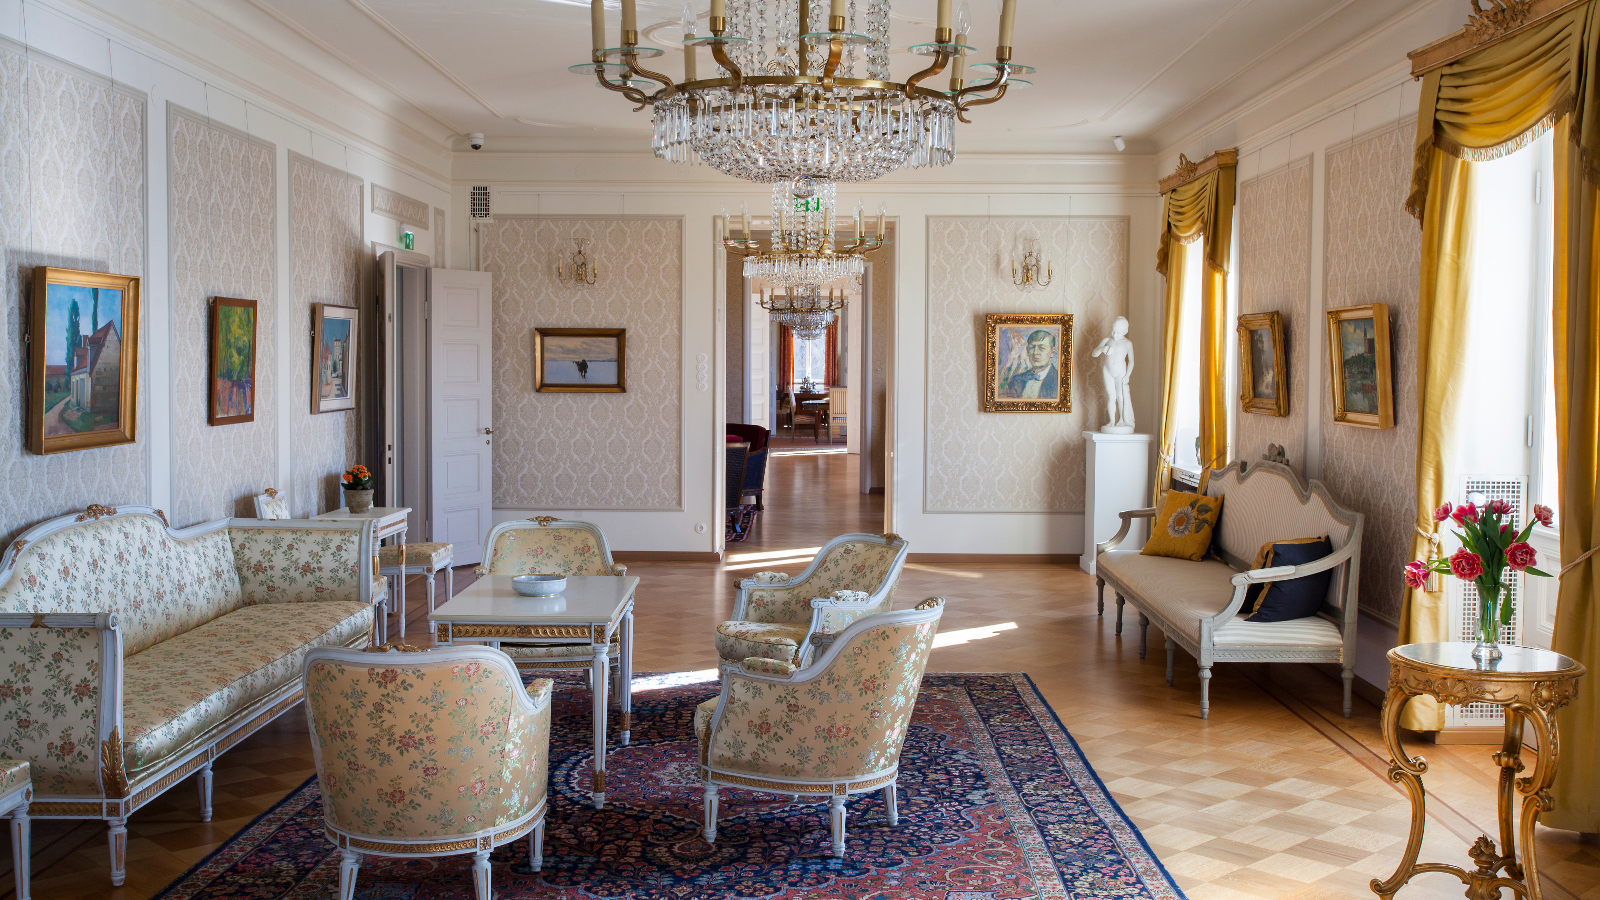 Kuvassa on Söderlångvikin kalustettu huone, jossa on vanhoja tyylikalusteita ja melko vaaleat värit.  Verhot ovat kullankeltaiset.